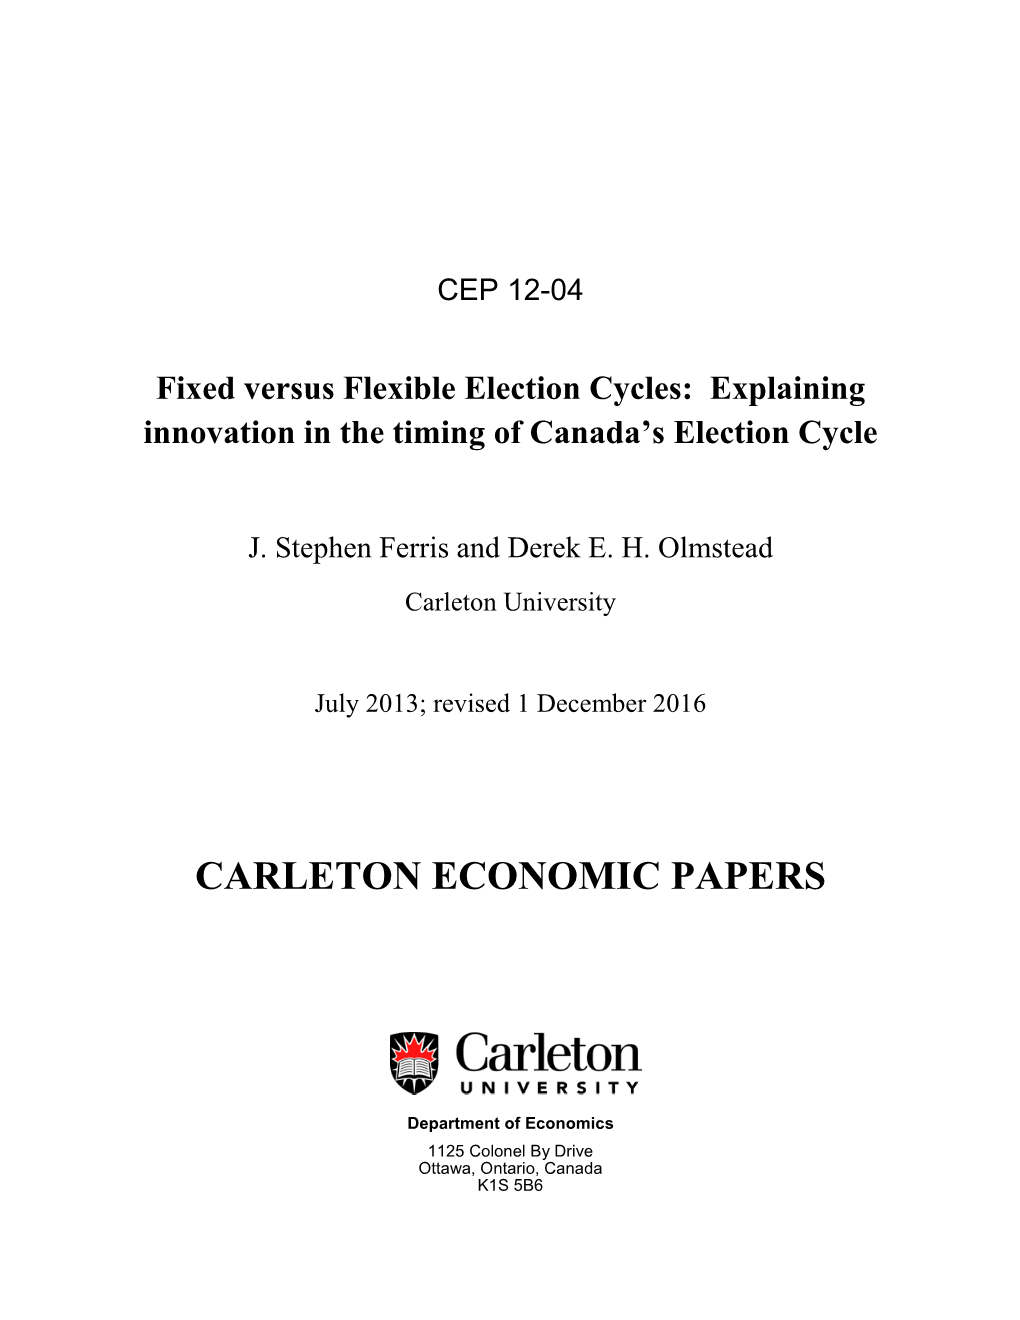 Carleton Economic Papers